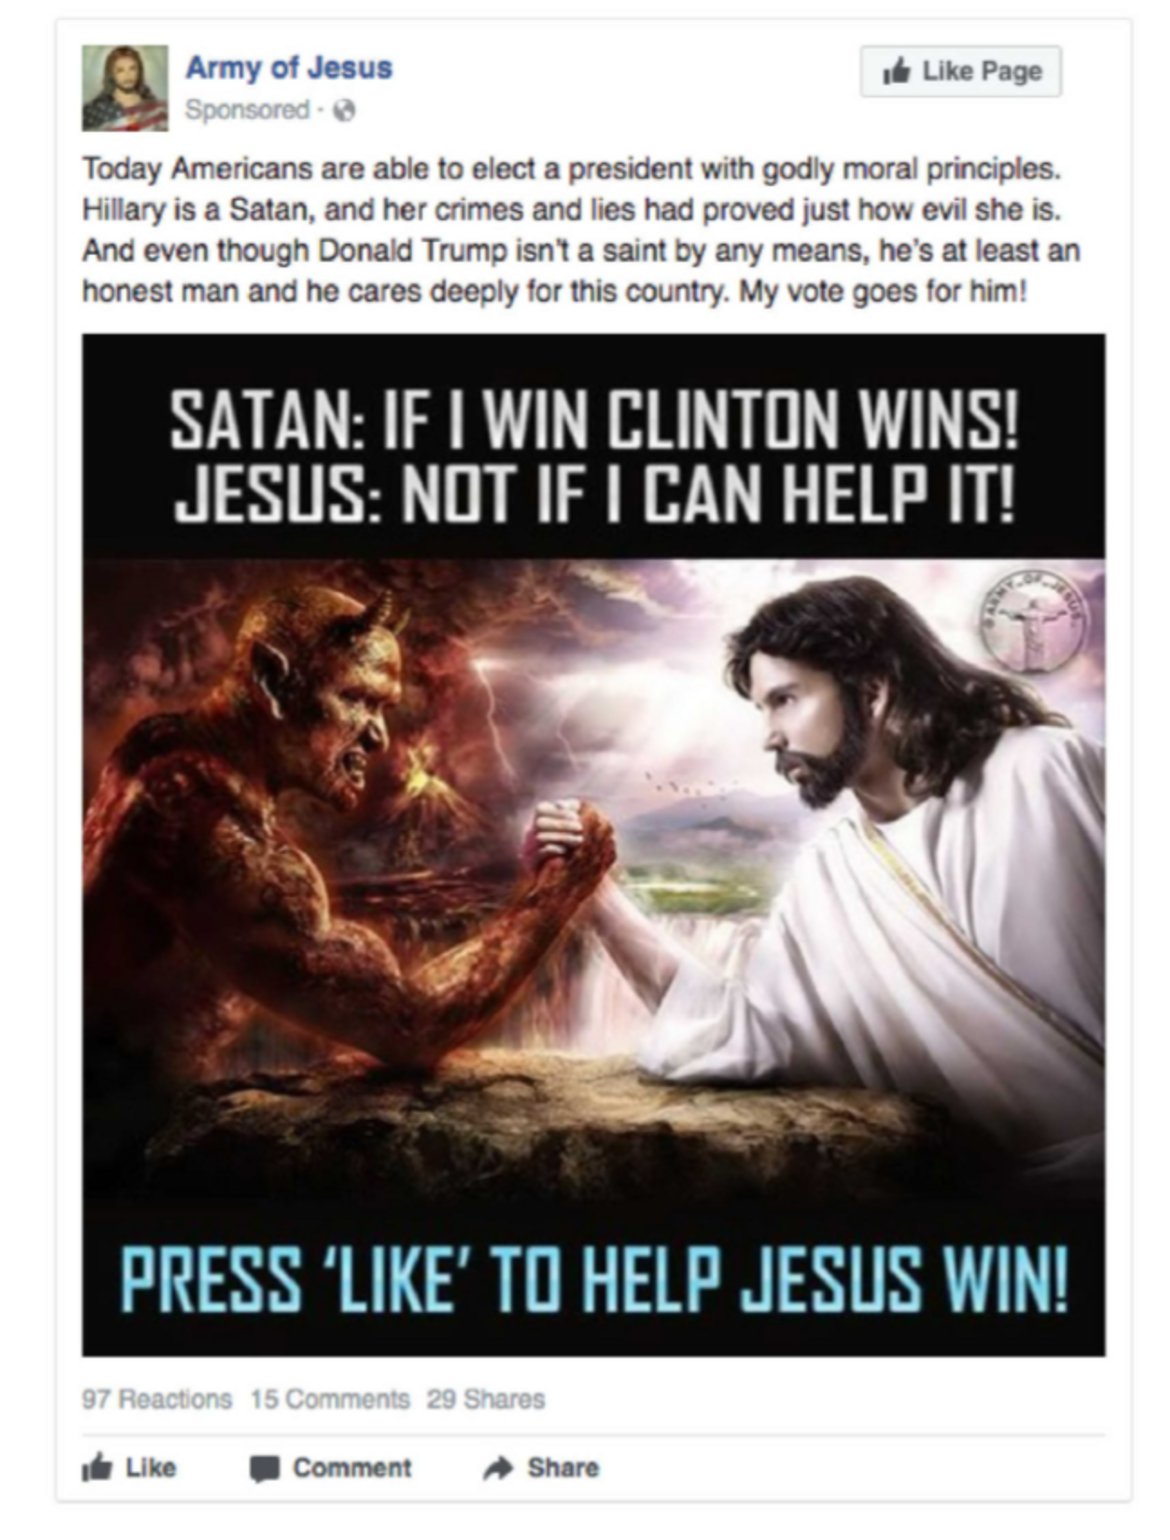 Една от рекламите, спонсорирани от руската компания Internet Research Agency, показва как дяволът и Христос играят канадска борба: 

Сатаната: "Ако аз спечеля, печели Клинтън!"

Исус: "Не и ако зависи от мен!"

"Харесайте тази снимка, за да спечели Исус Христос".